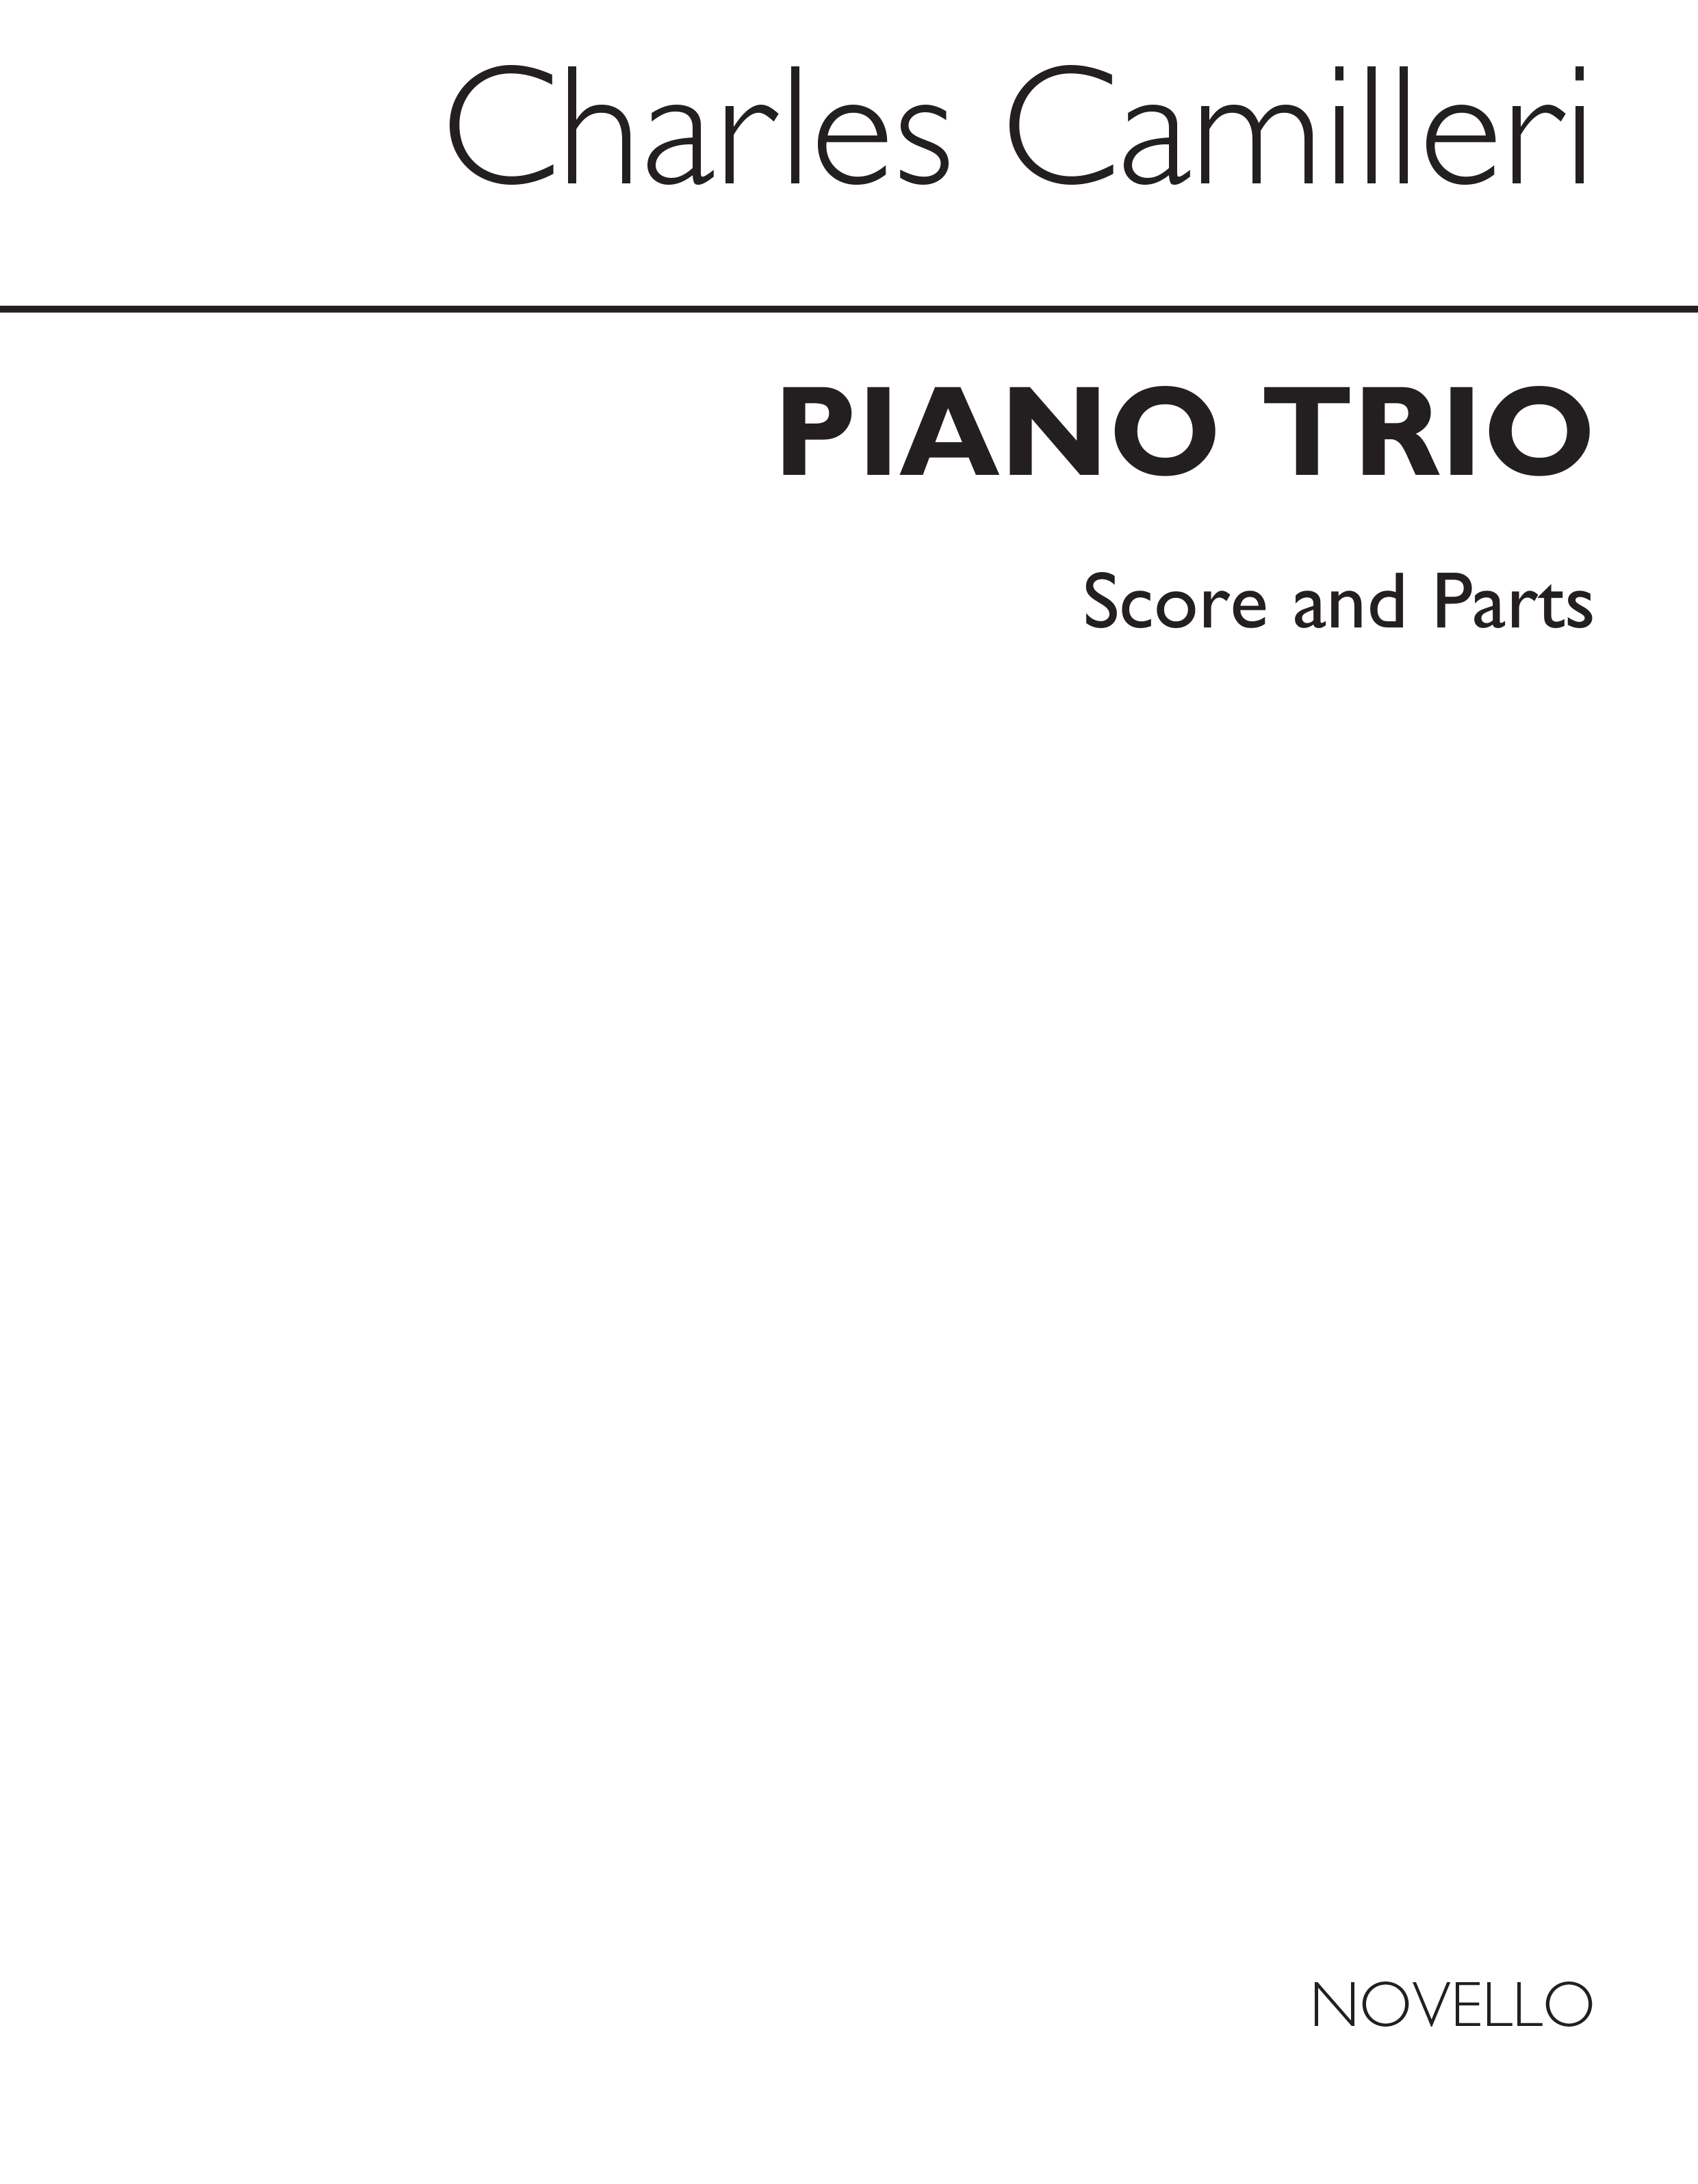 Camilleri: Piano Trio (Score and Parts)